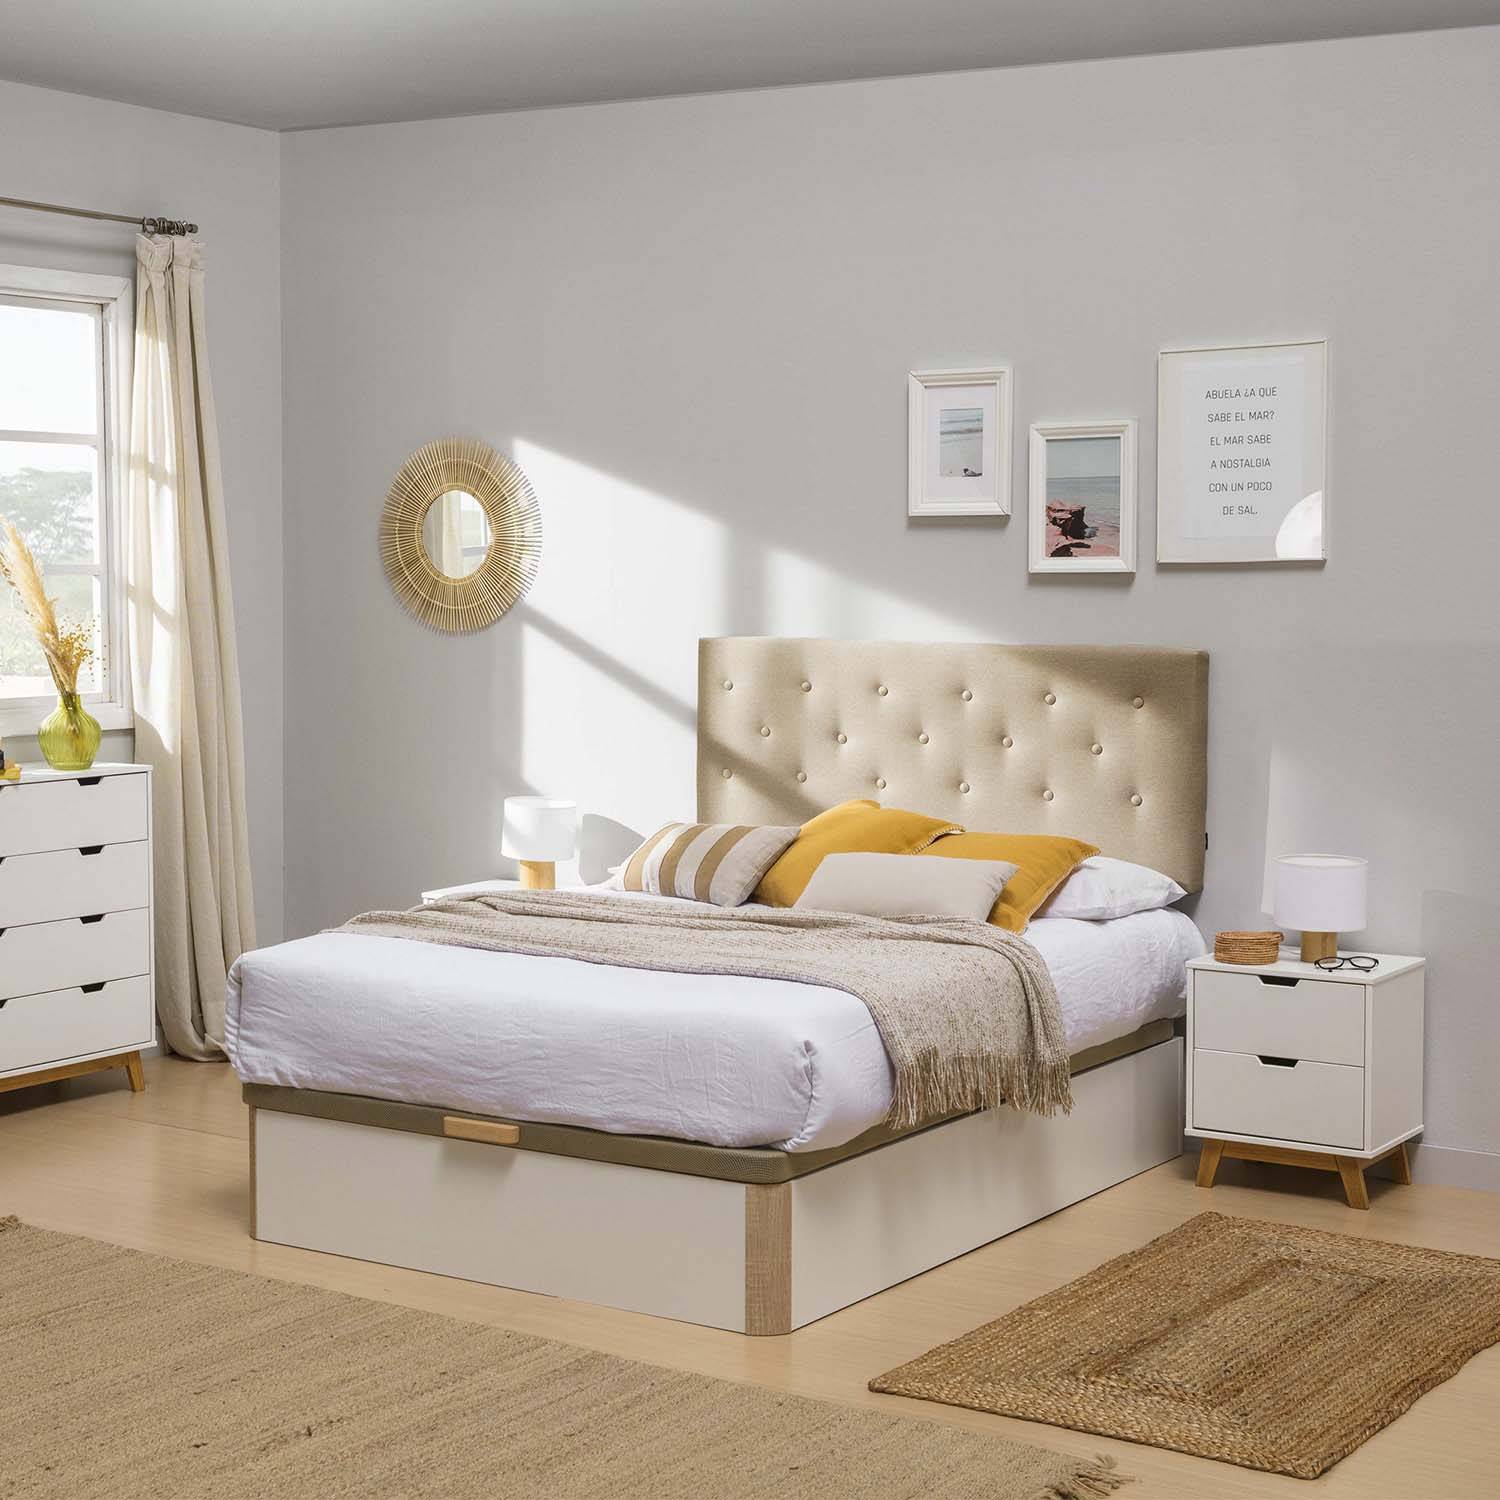 Dormitorios matrimonio: estilos de decoración - Blog Top Mueble